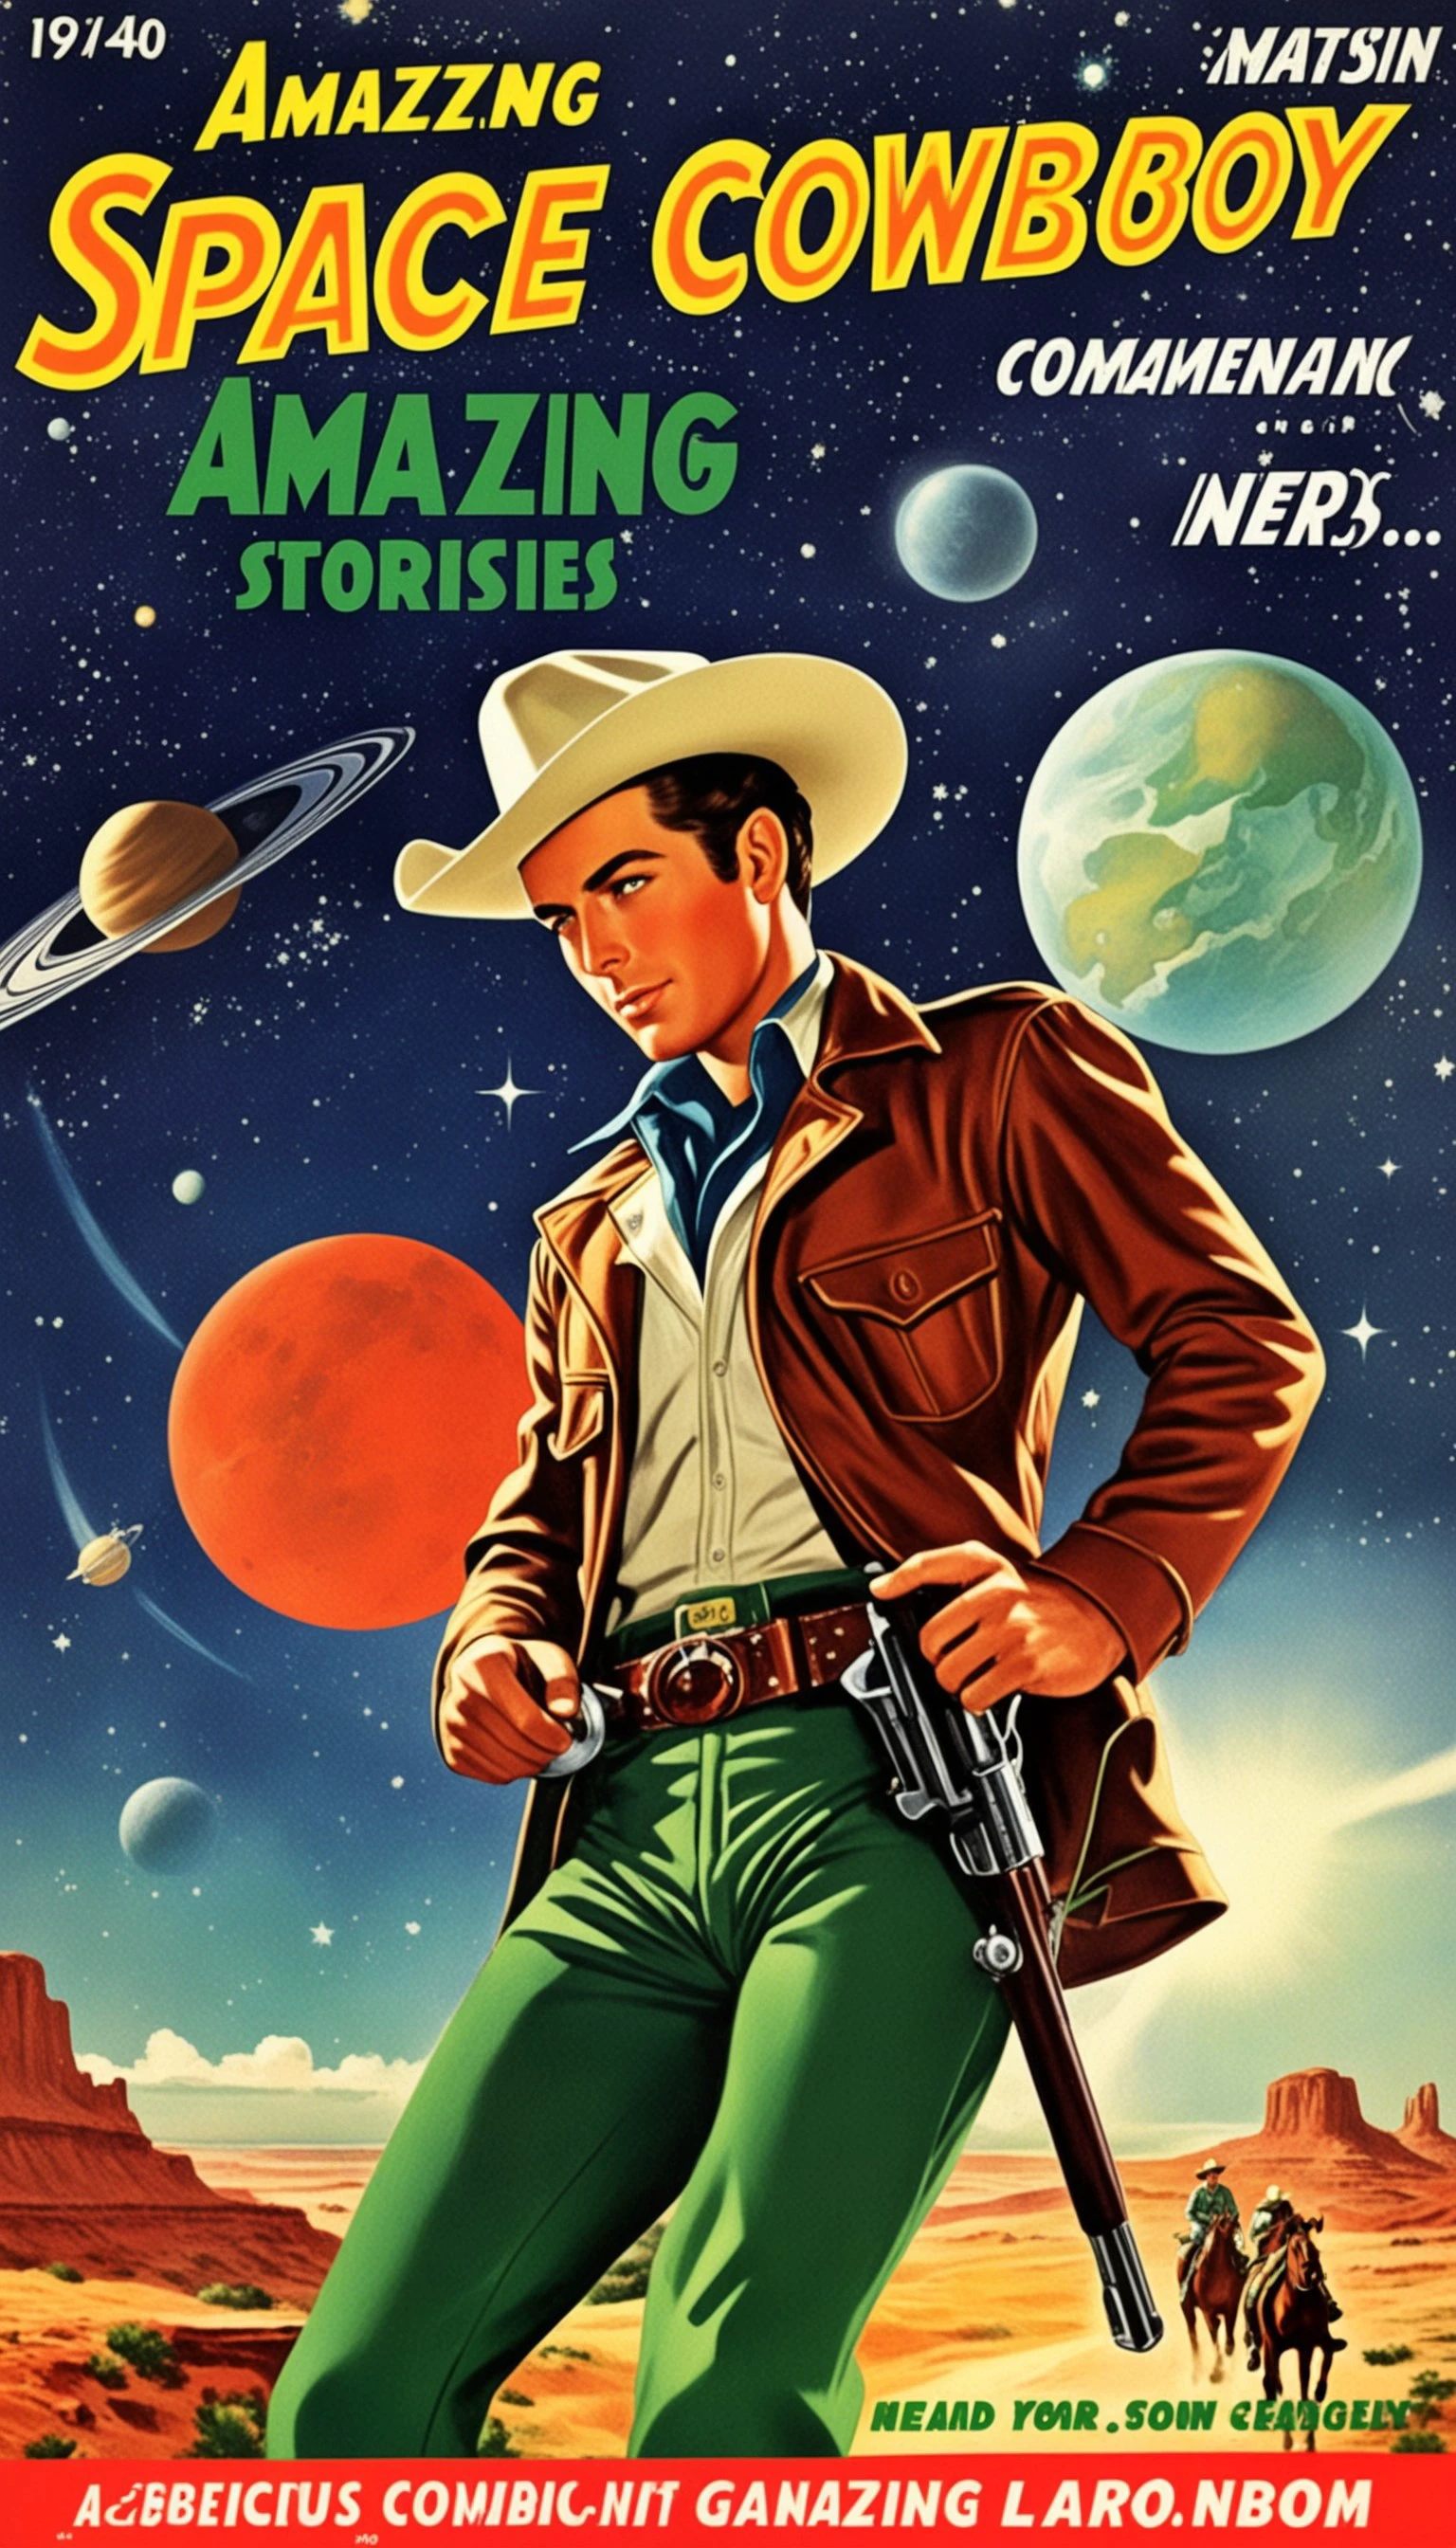 漫画书的封面, 关于太空牛仔的漫画书封面, 1 牛仔戴帽子的风格惊人的故事, 1940 年代 1950 年代, 红色和绿色, 漫画艺术, 现实主义风格场景, 浪漫化现实主义动态